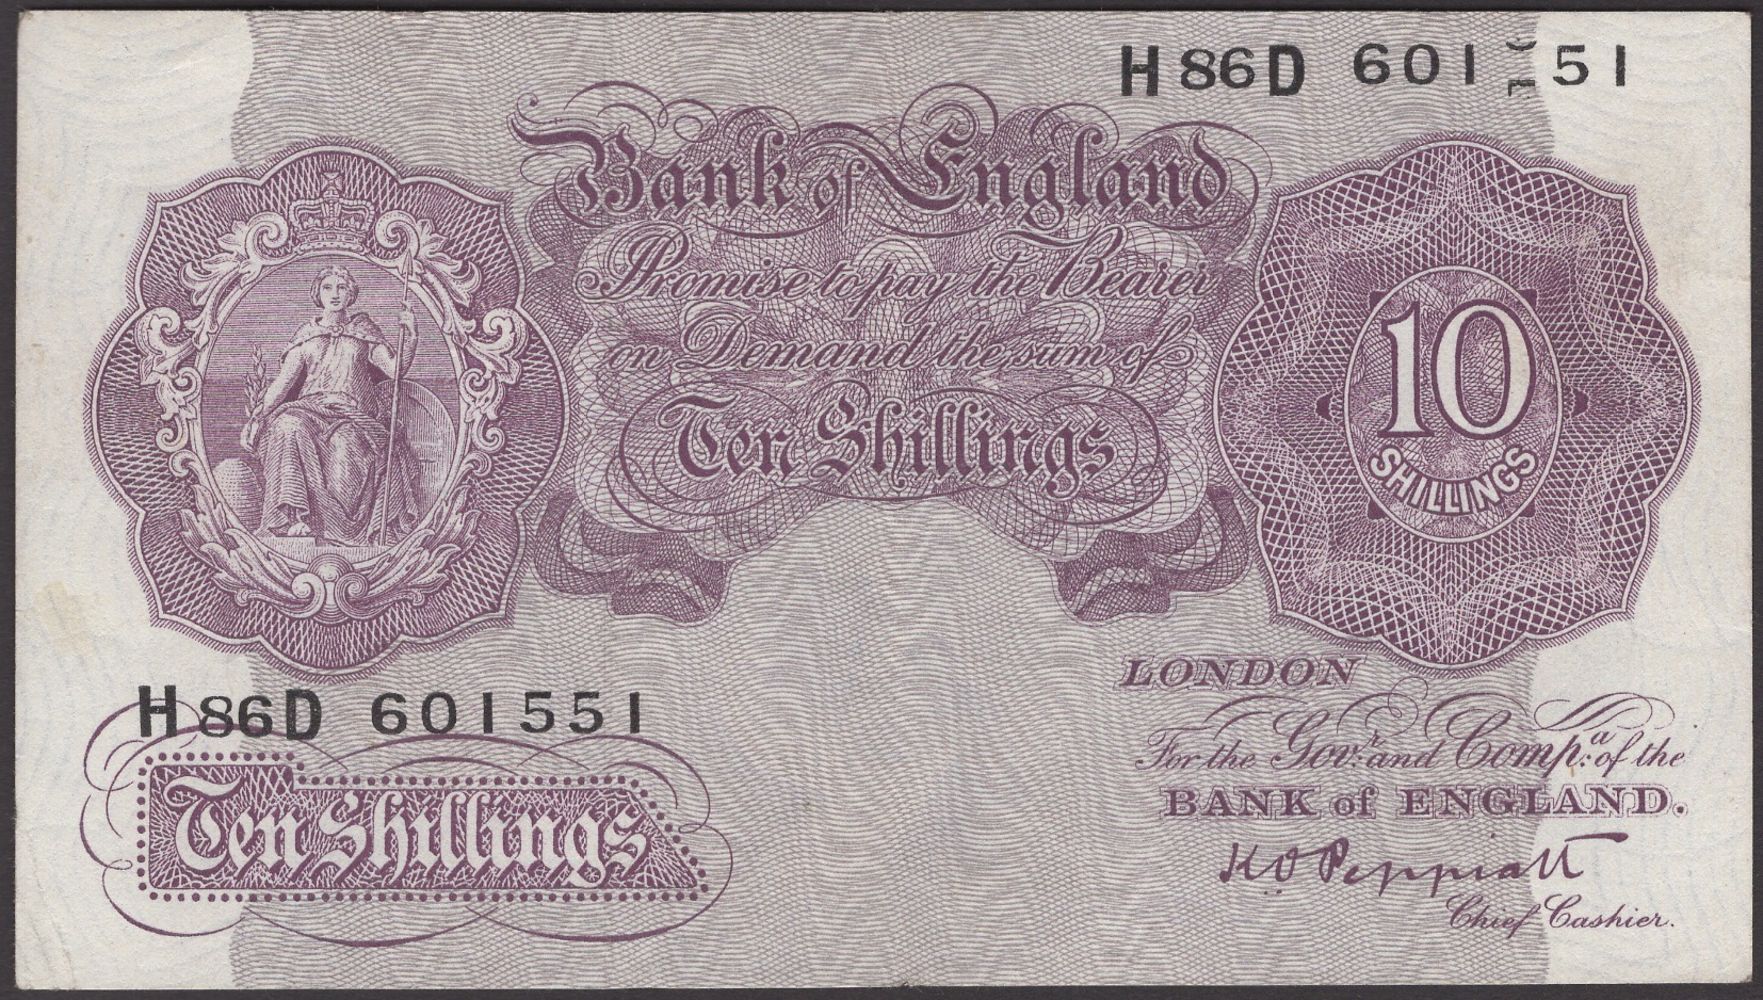 British, Irish and World Banknotes